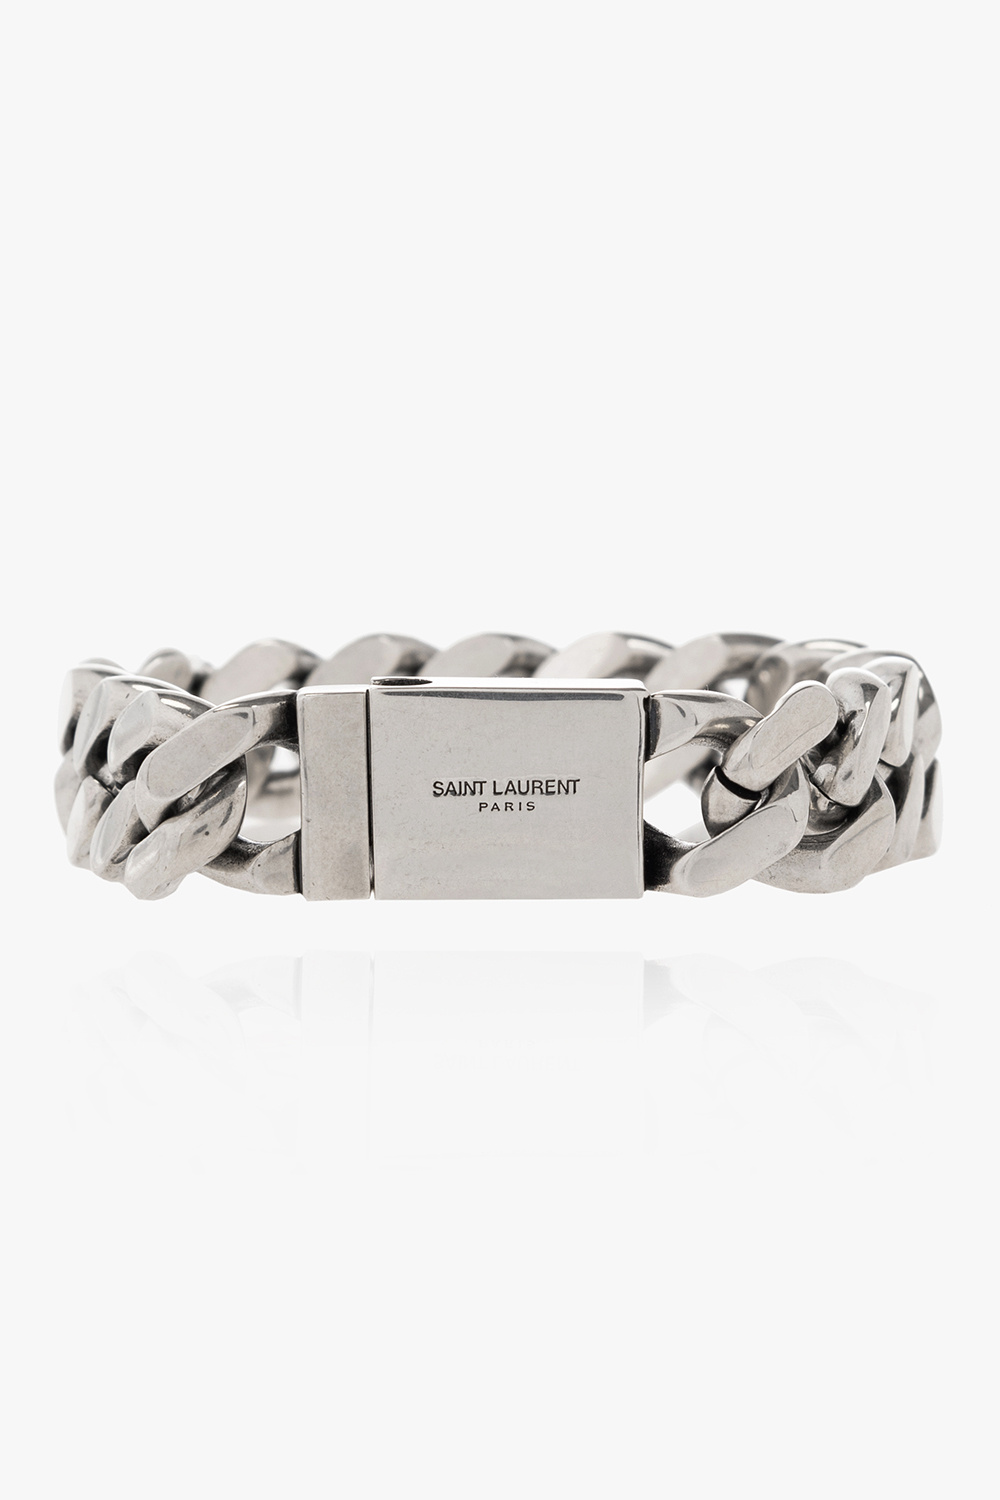 Saint Laurent Brass bracelet with logo